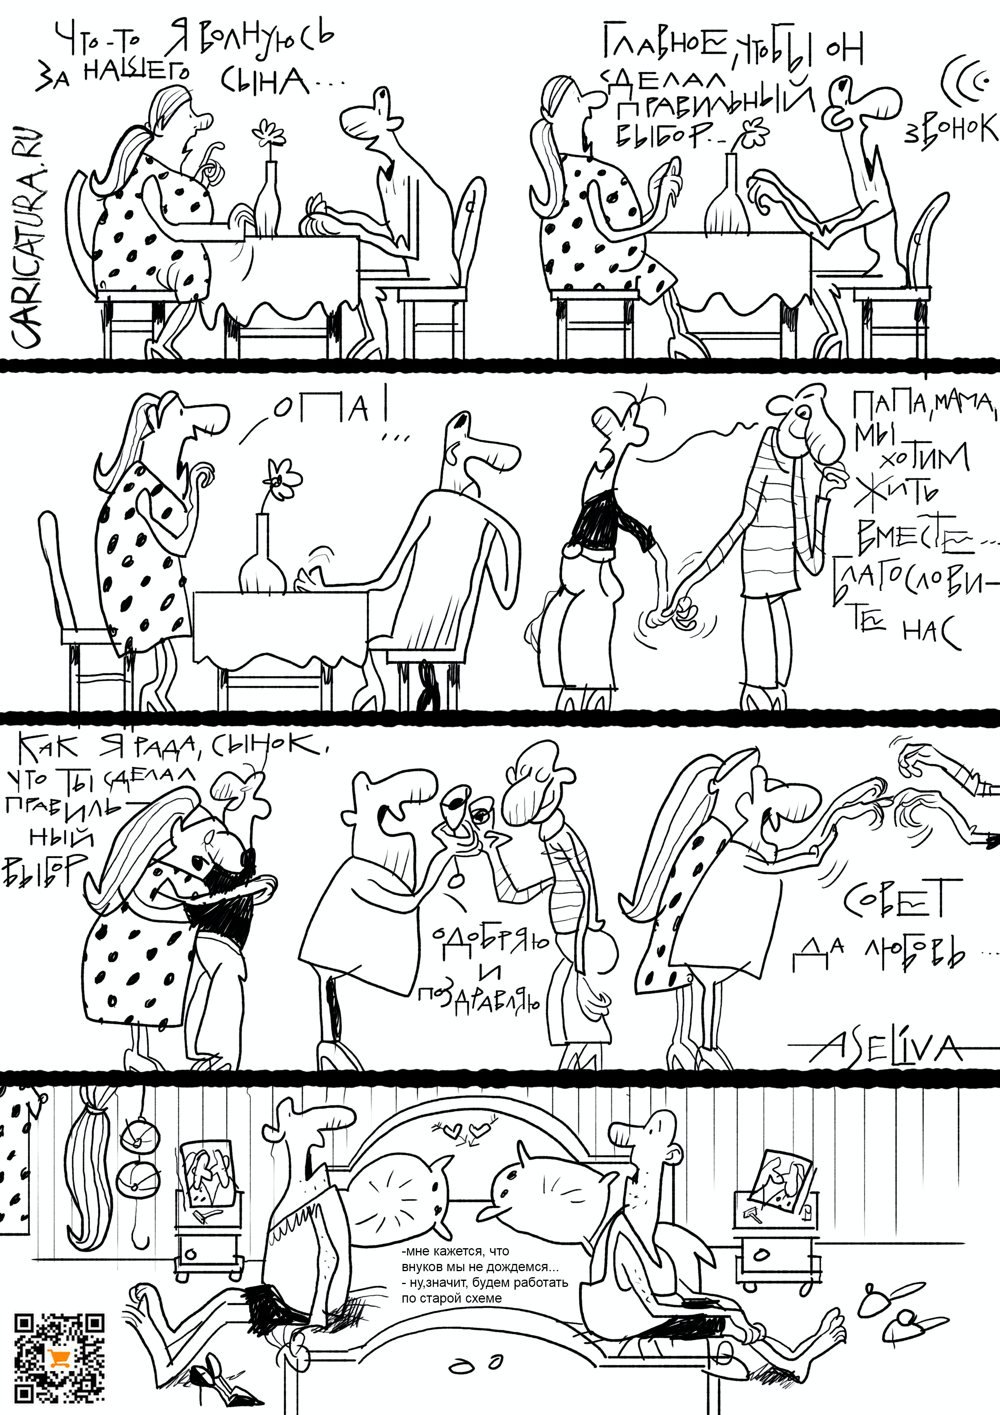 Комикс "Новые отношения в современных семьях", Андрей Селиванов